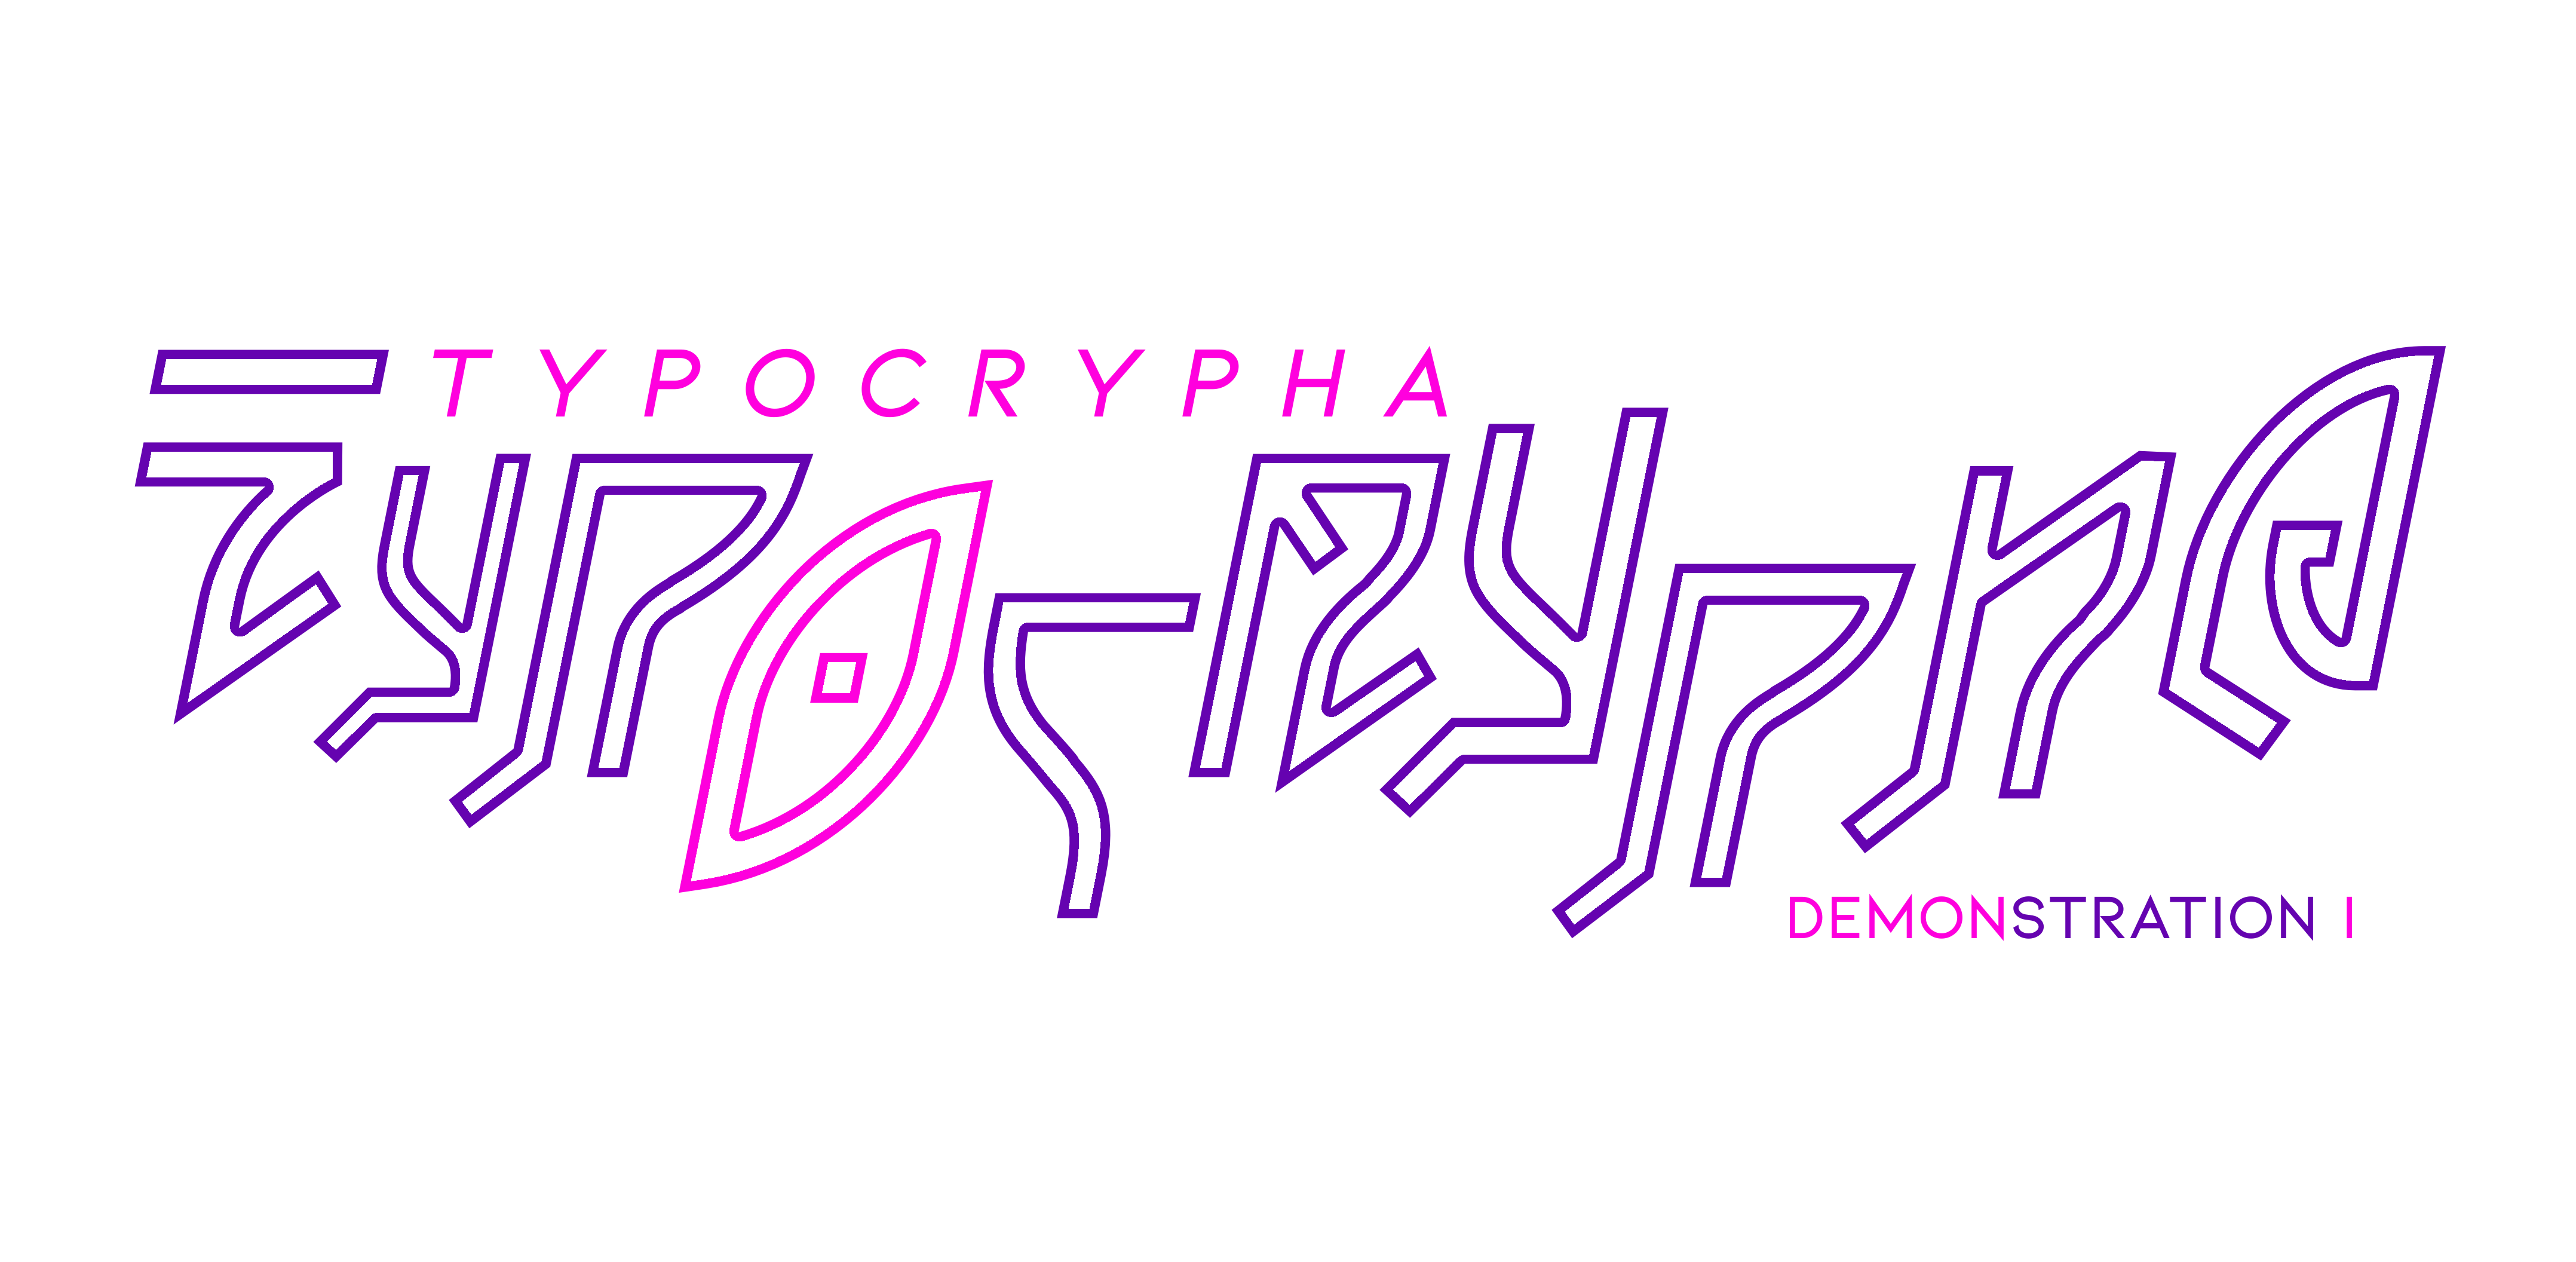 TYPOCRYPHA - DEMOnstration I